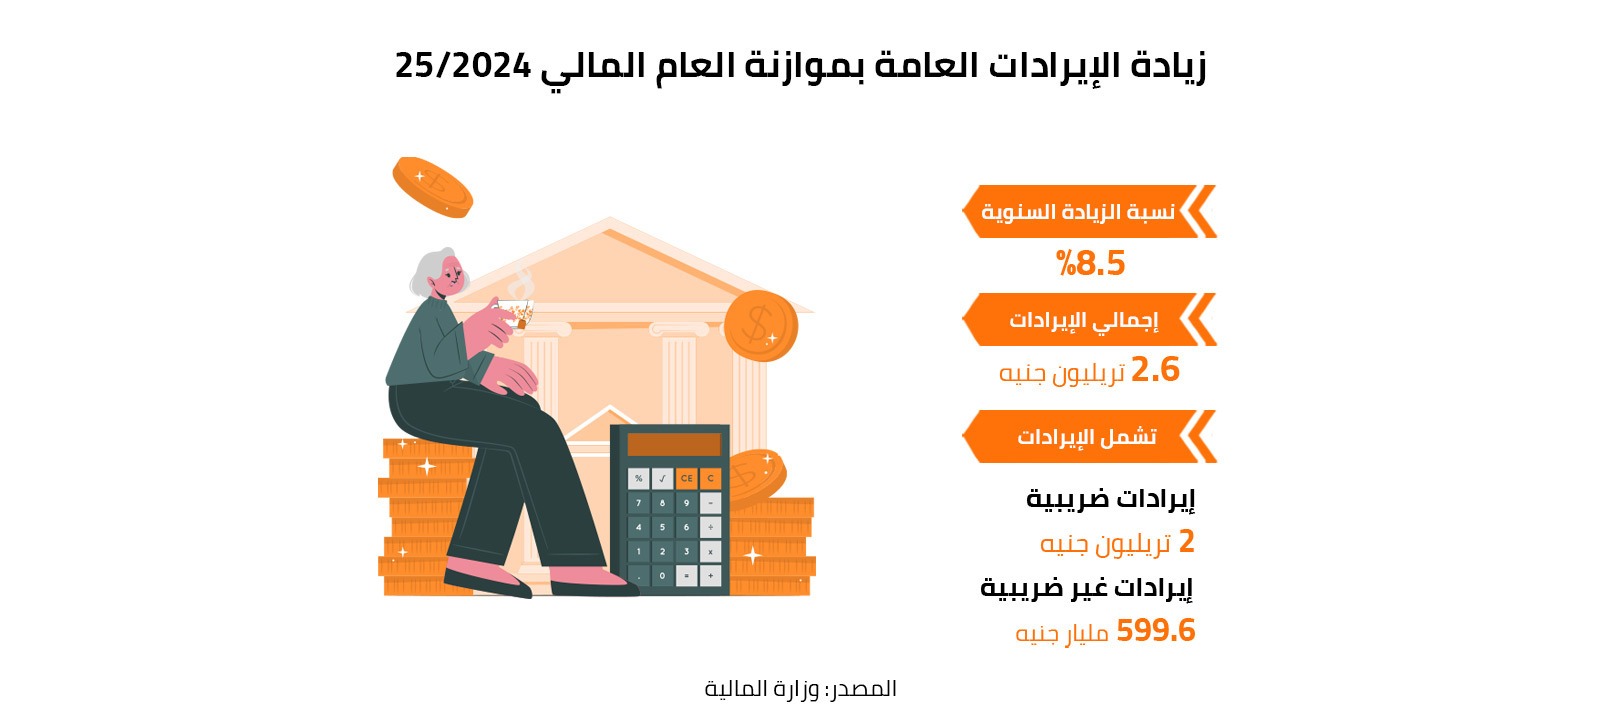 زيادة الإيرادات العامة بموازنة العام المالي 2024/25